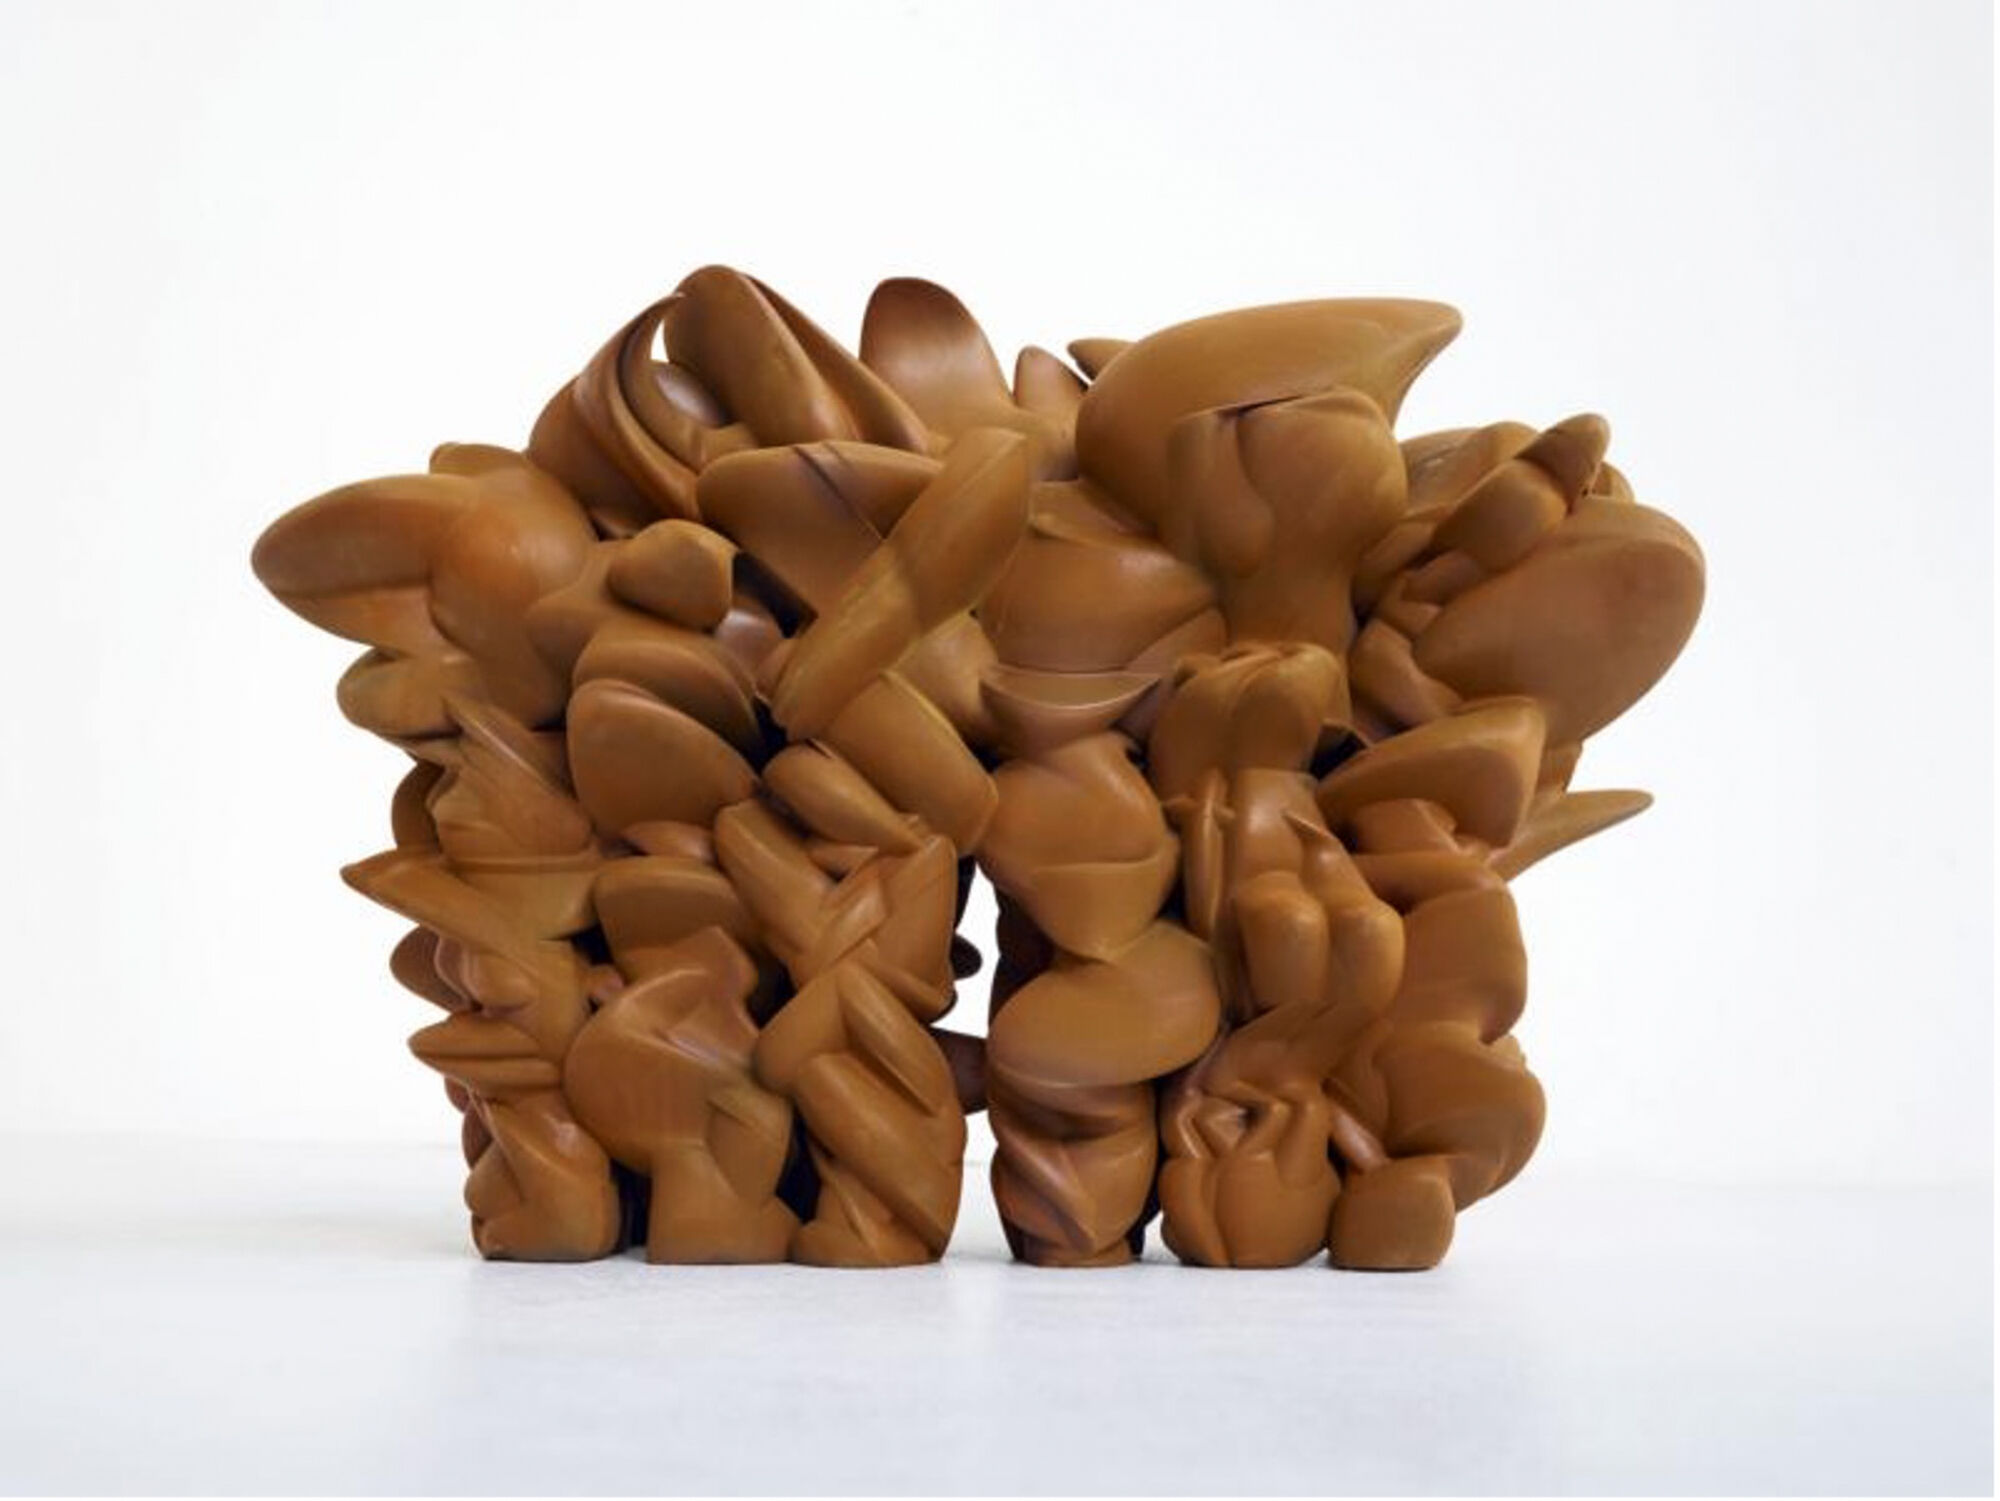 Skulptur "Grenze Weg" (2015) von Tony Cragg